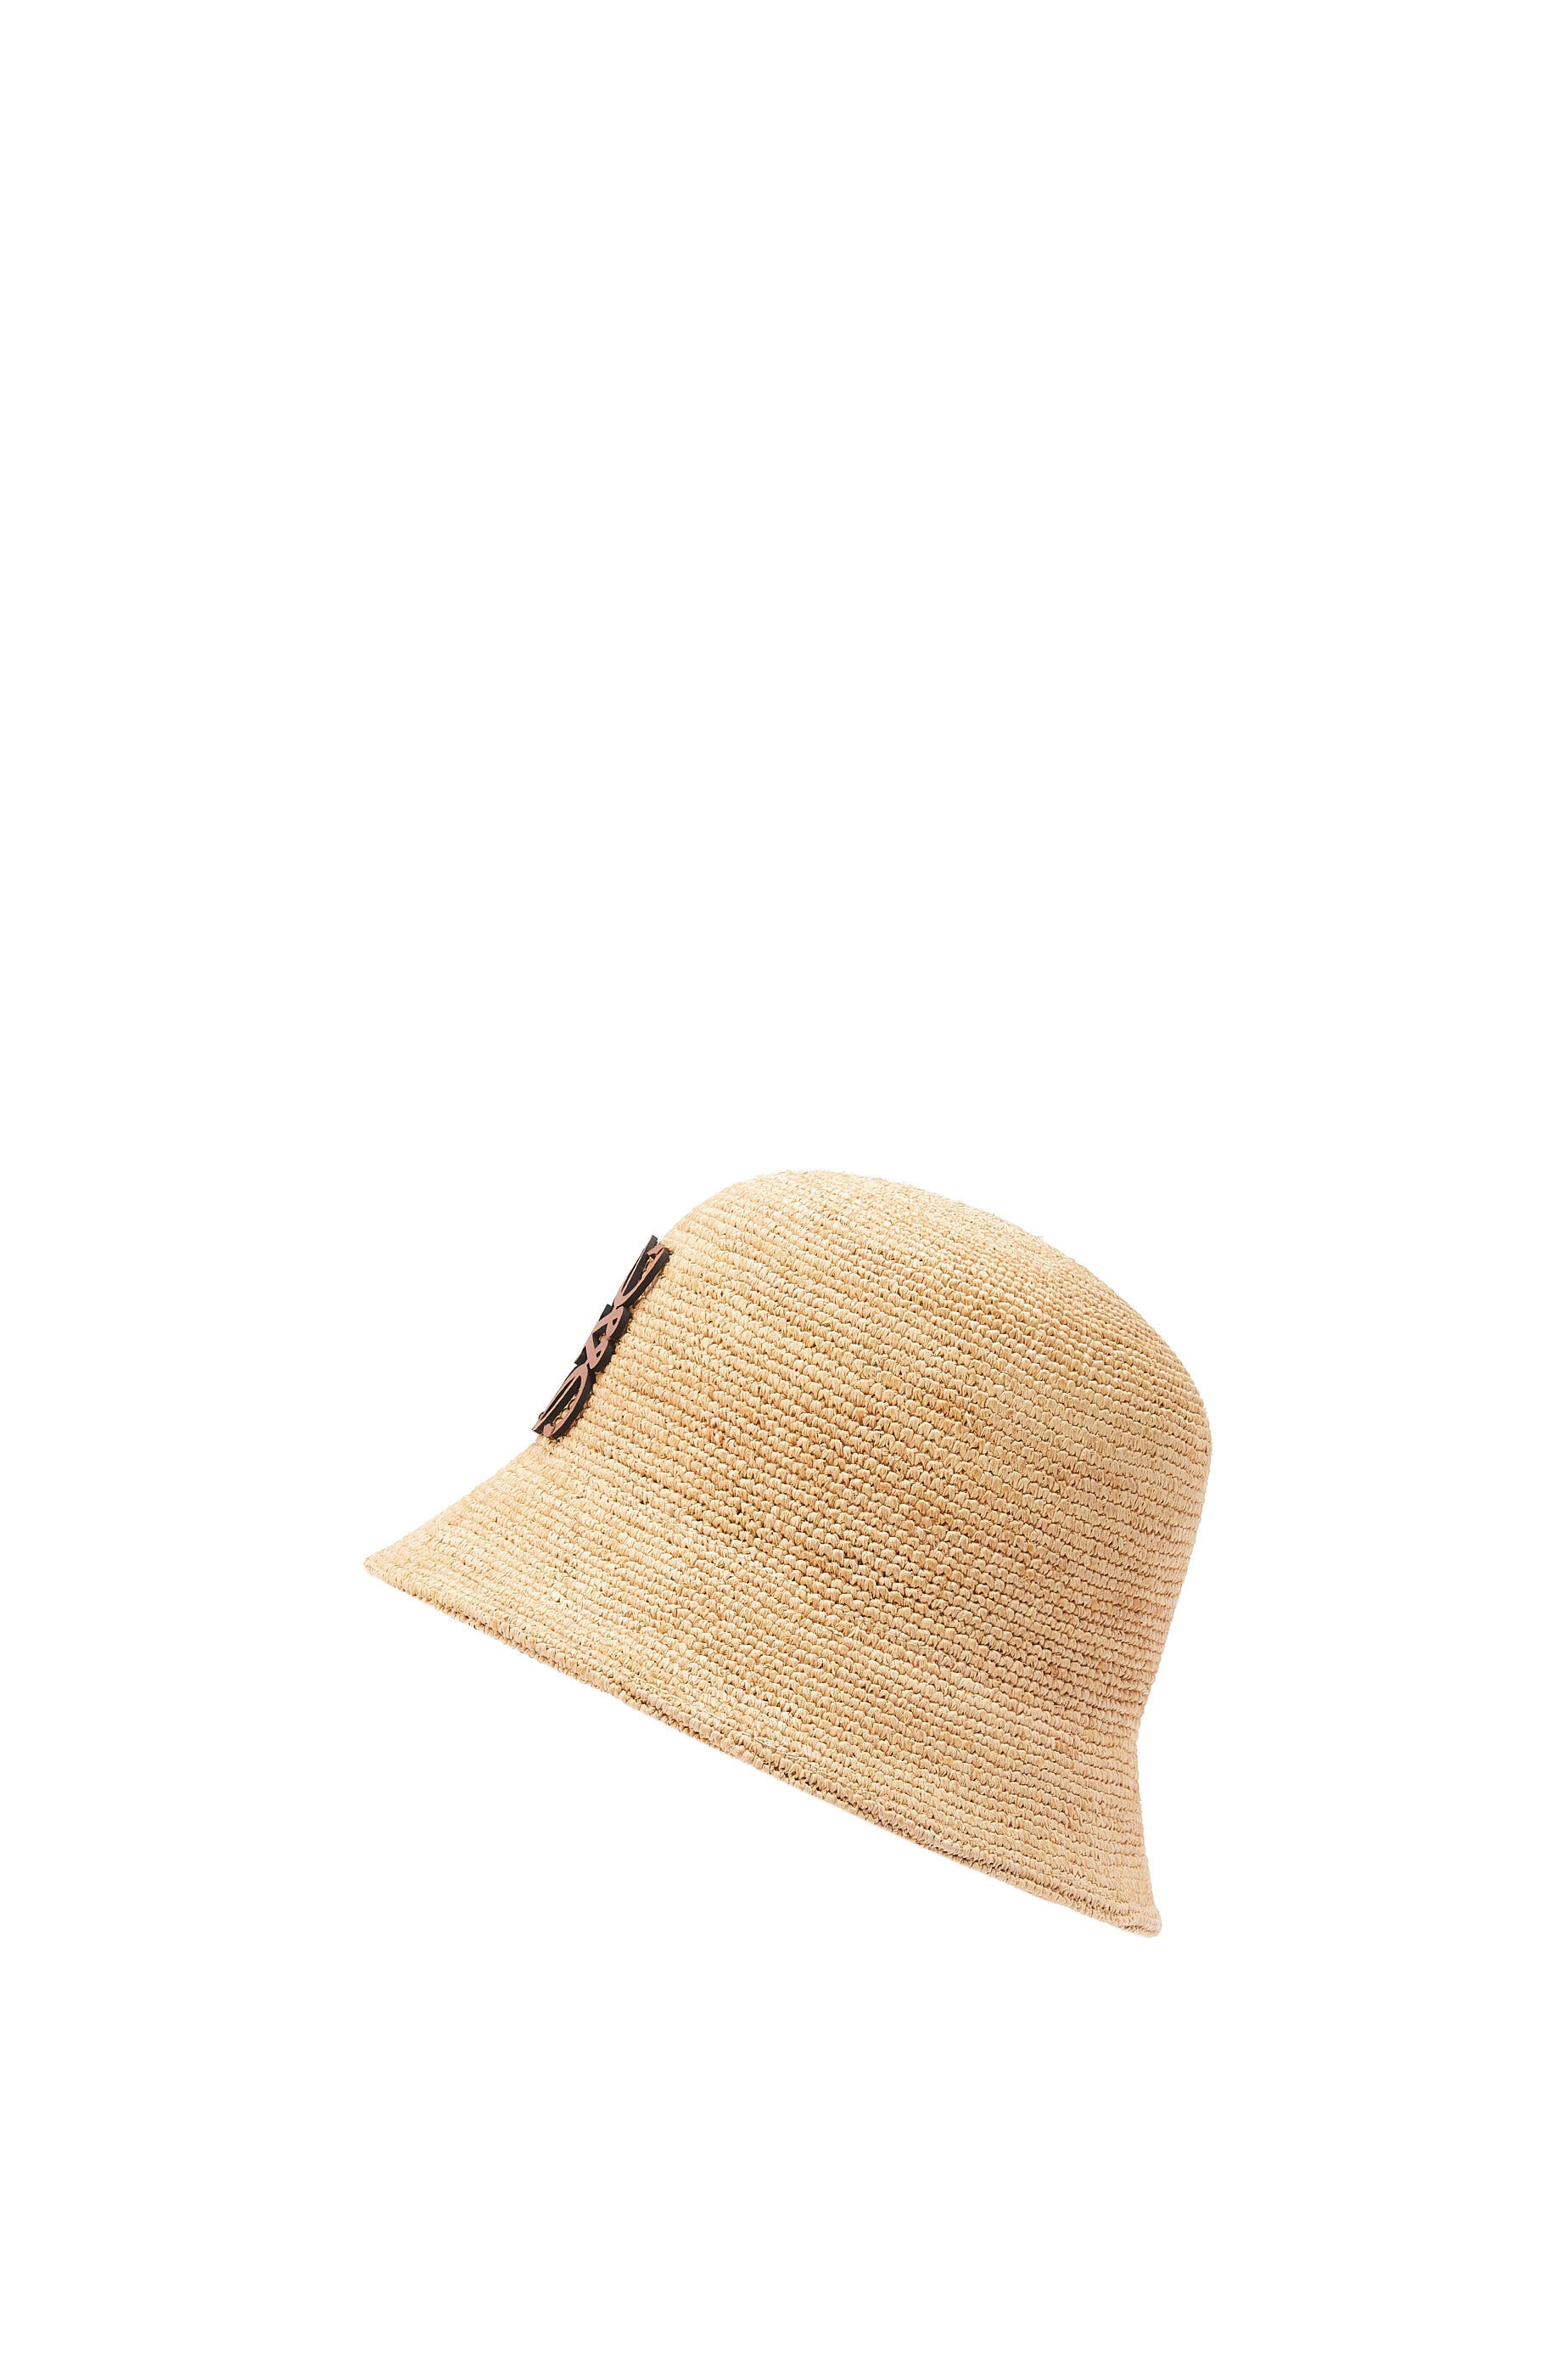 Bucket hat in raffia and calfskin - 3